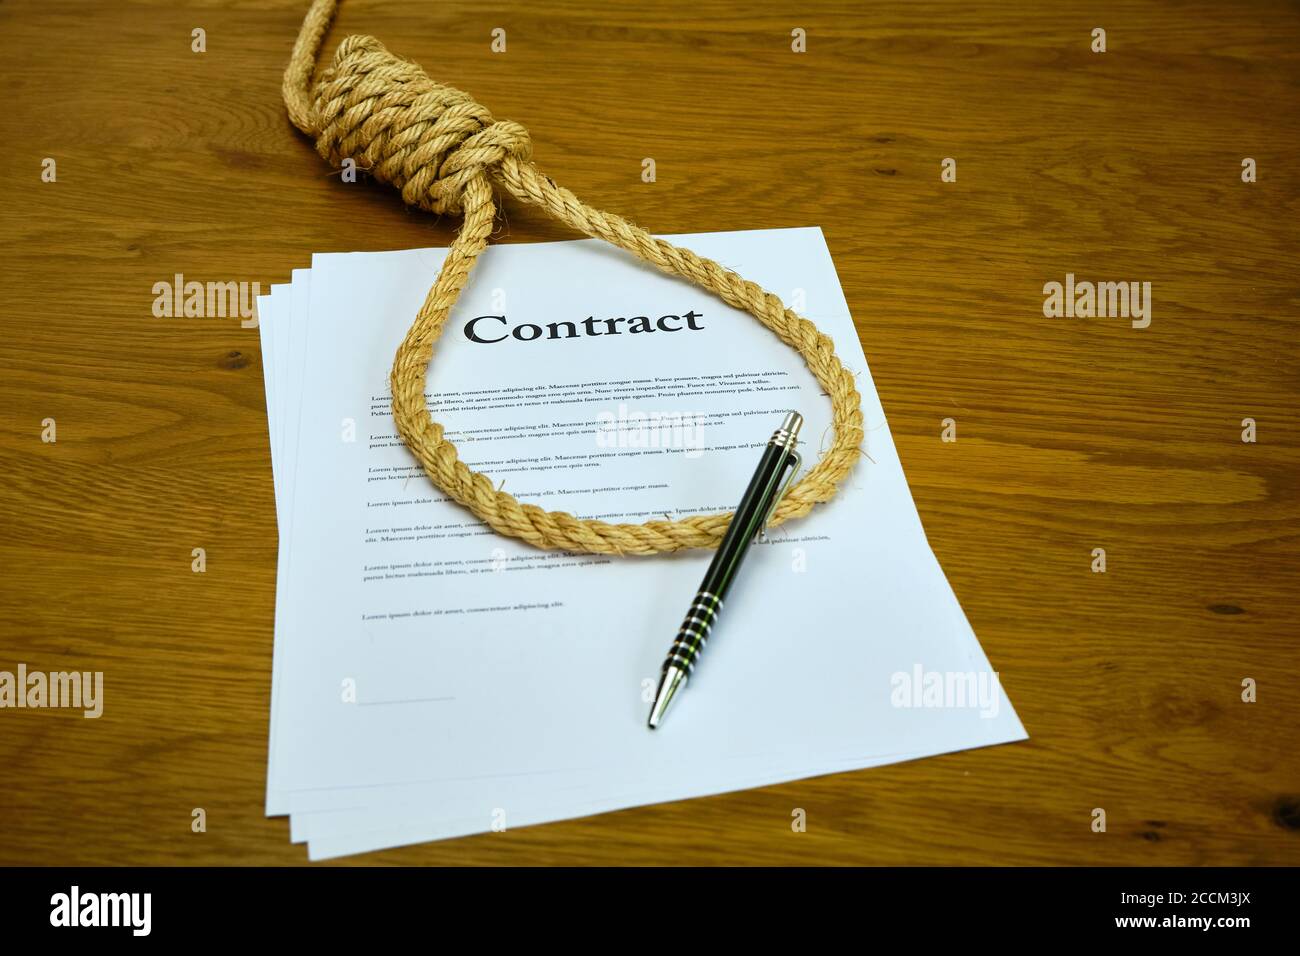 Vertrag mit Stift und Seil in Hangmans Schlinge gebunden.  Strangulationsvertrag, unlautere Vereinbarung. Lorum Ipsum-Text  Stockfotografie - Alamy